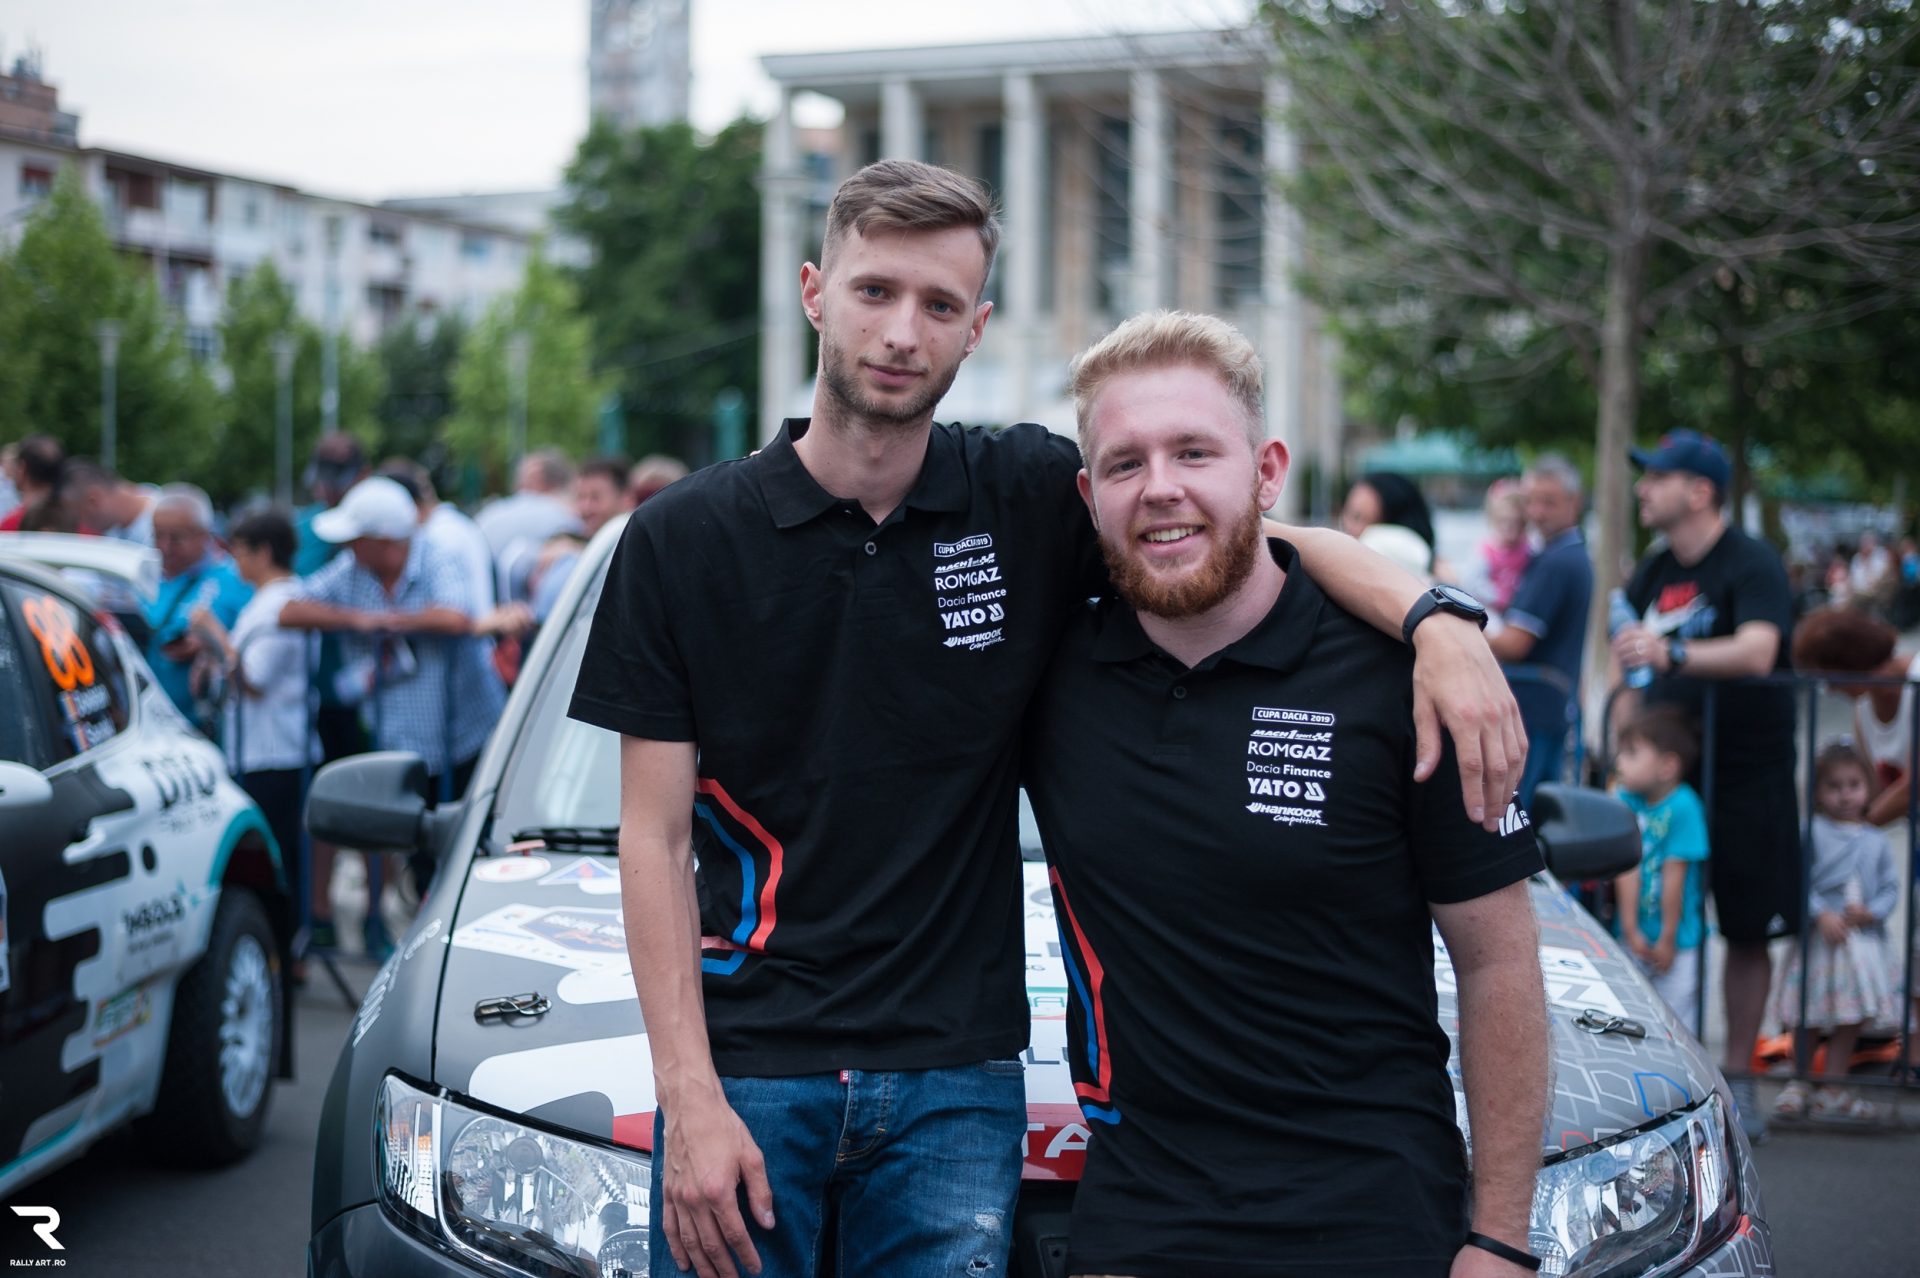 Cristi Sugár: „Vom alerga în Cupa Dacia cu gândul de a ne apăra titlul”